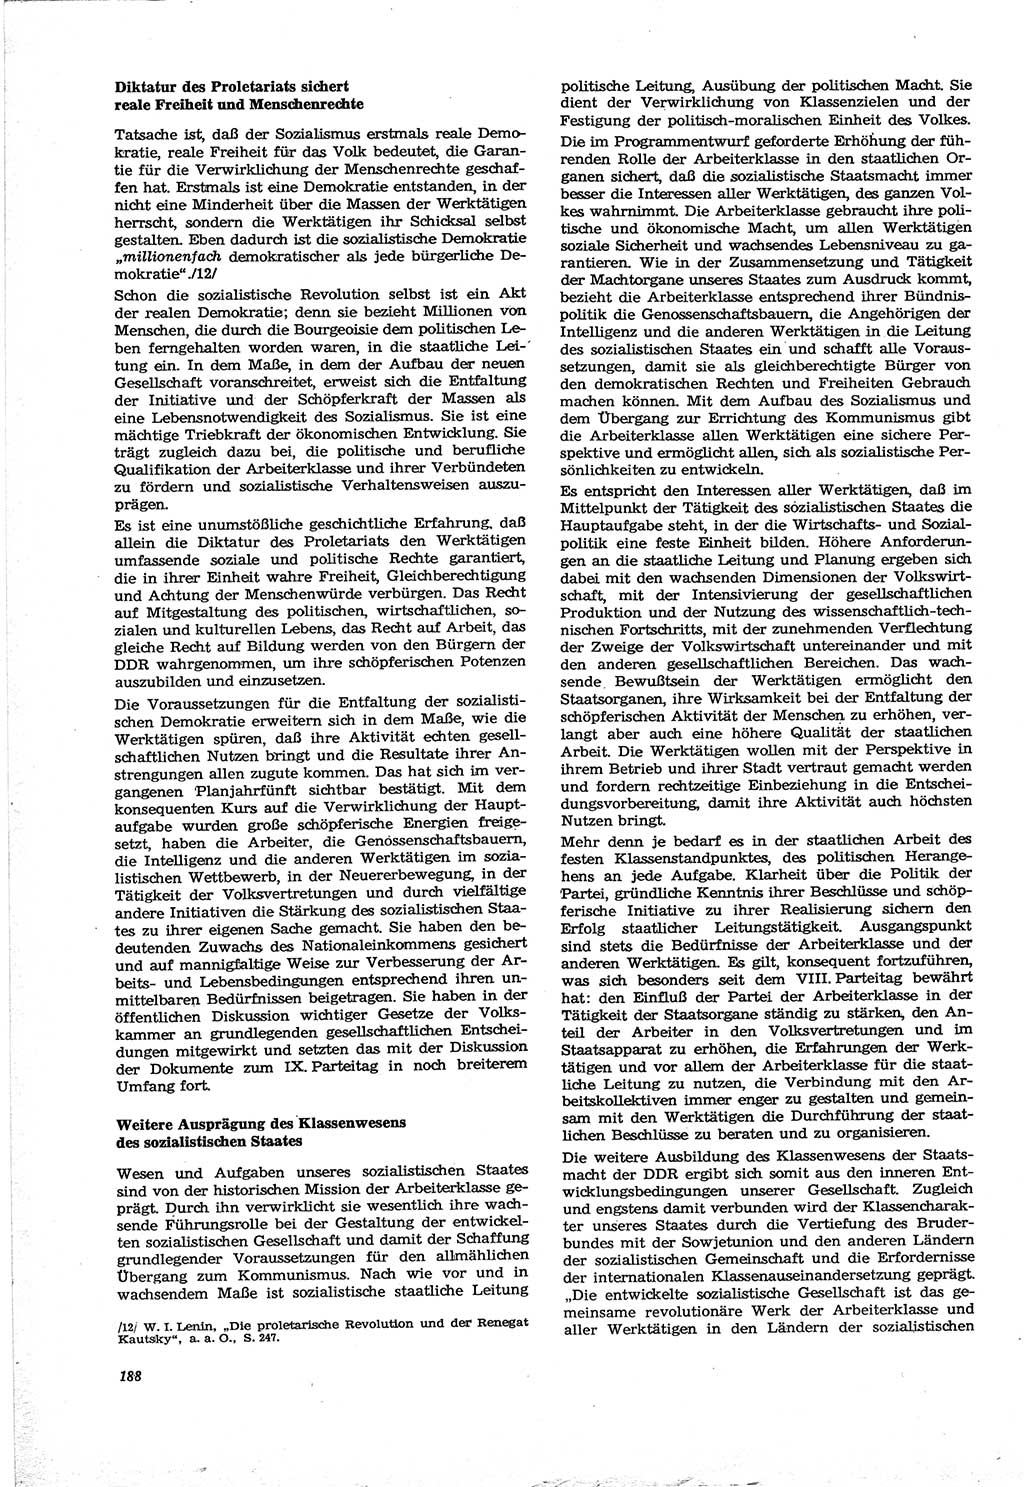 Neue Justiz (NJ), Zeitschrift für Recht und Rechtswissenschaft [Deutsche Demokratische Republik (DDR)], 30. Jahrgang 1976, Seite 188 (NJ DDR 1976, S. 188)